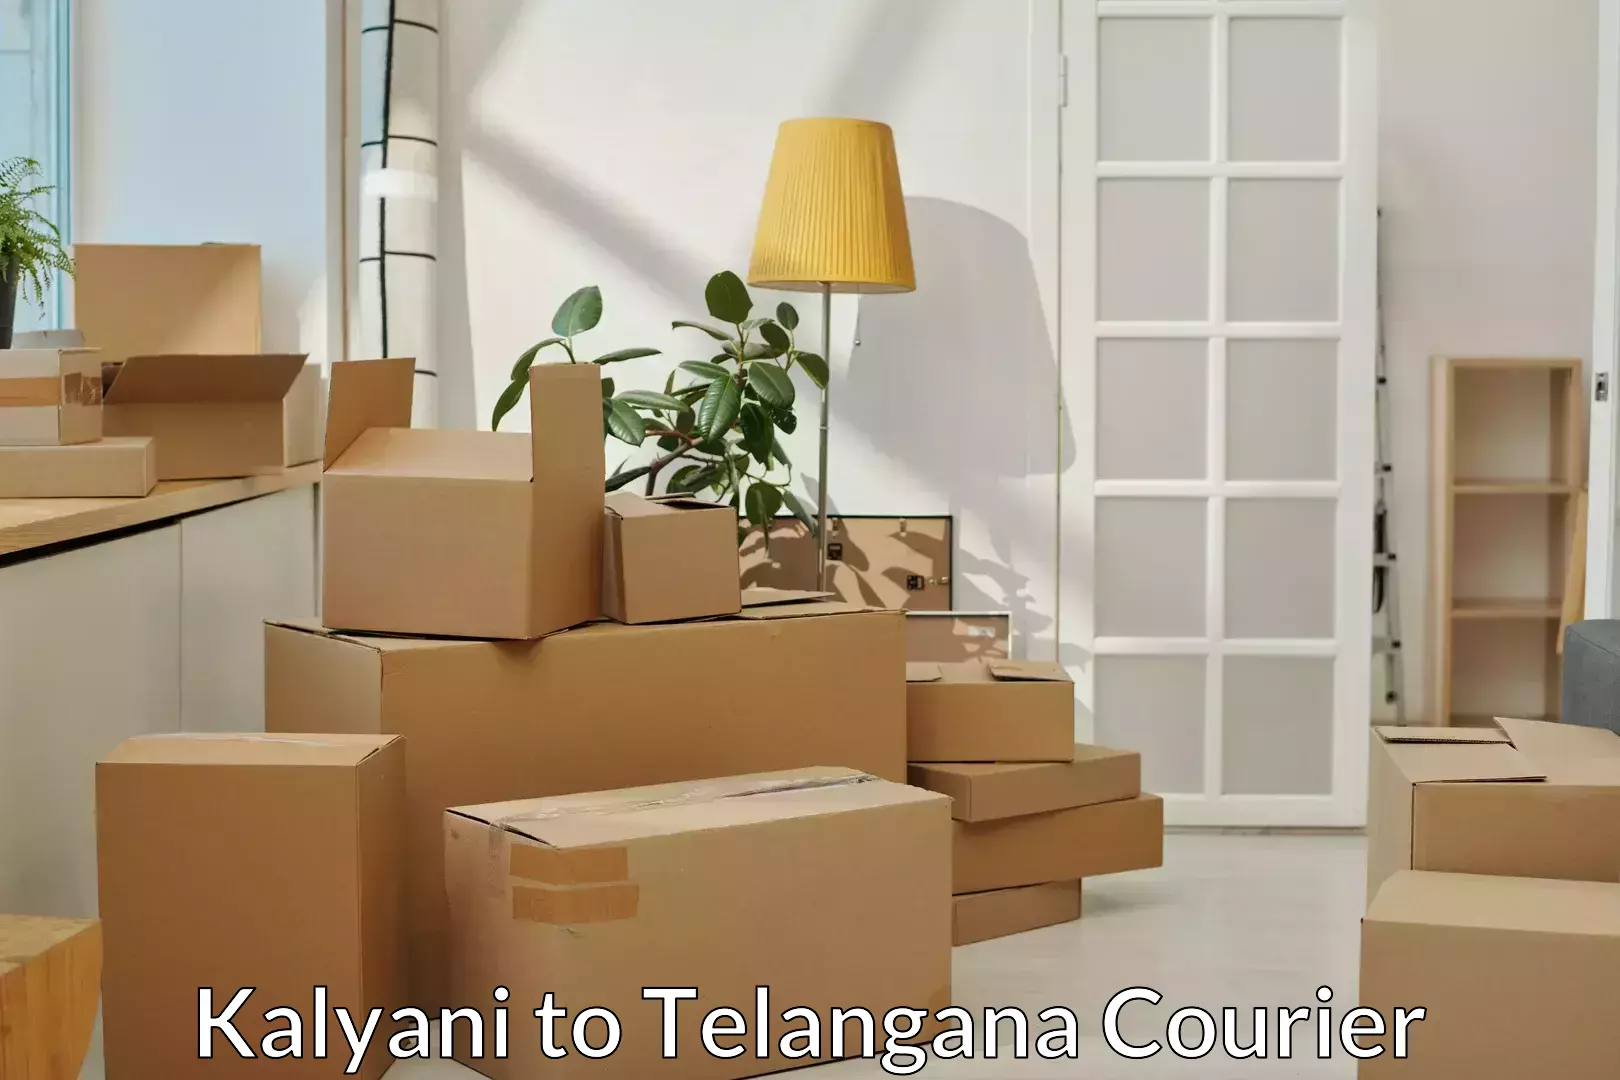 Furniture transport service Kalyani to Rayaparthi